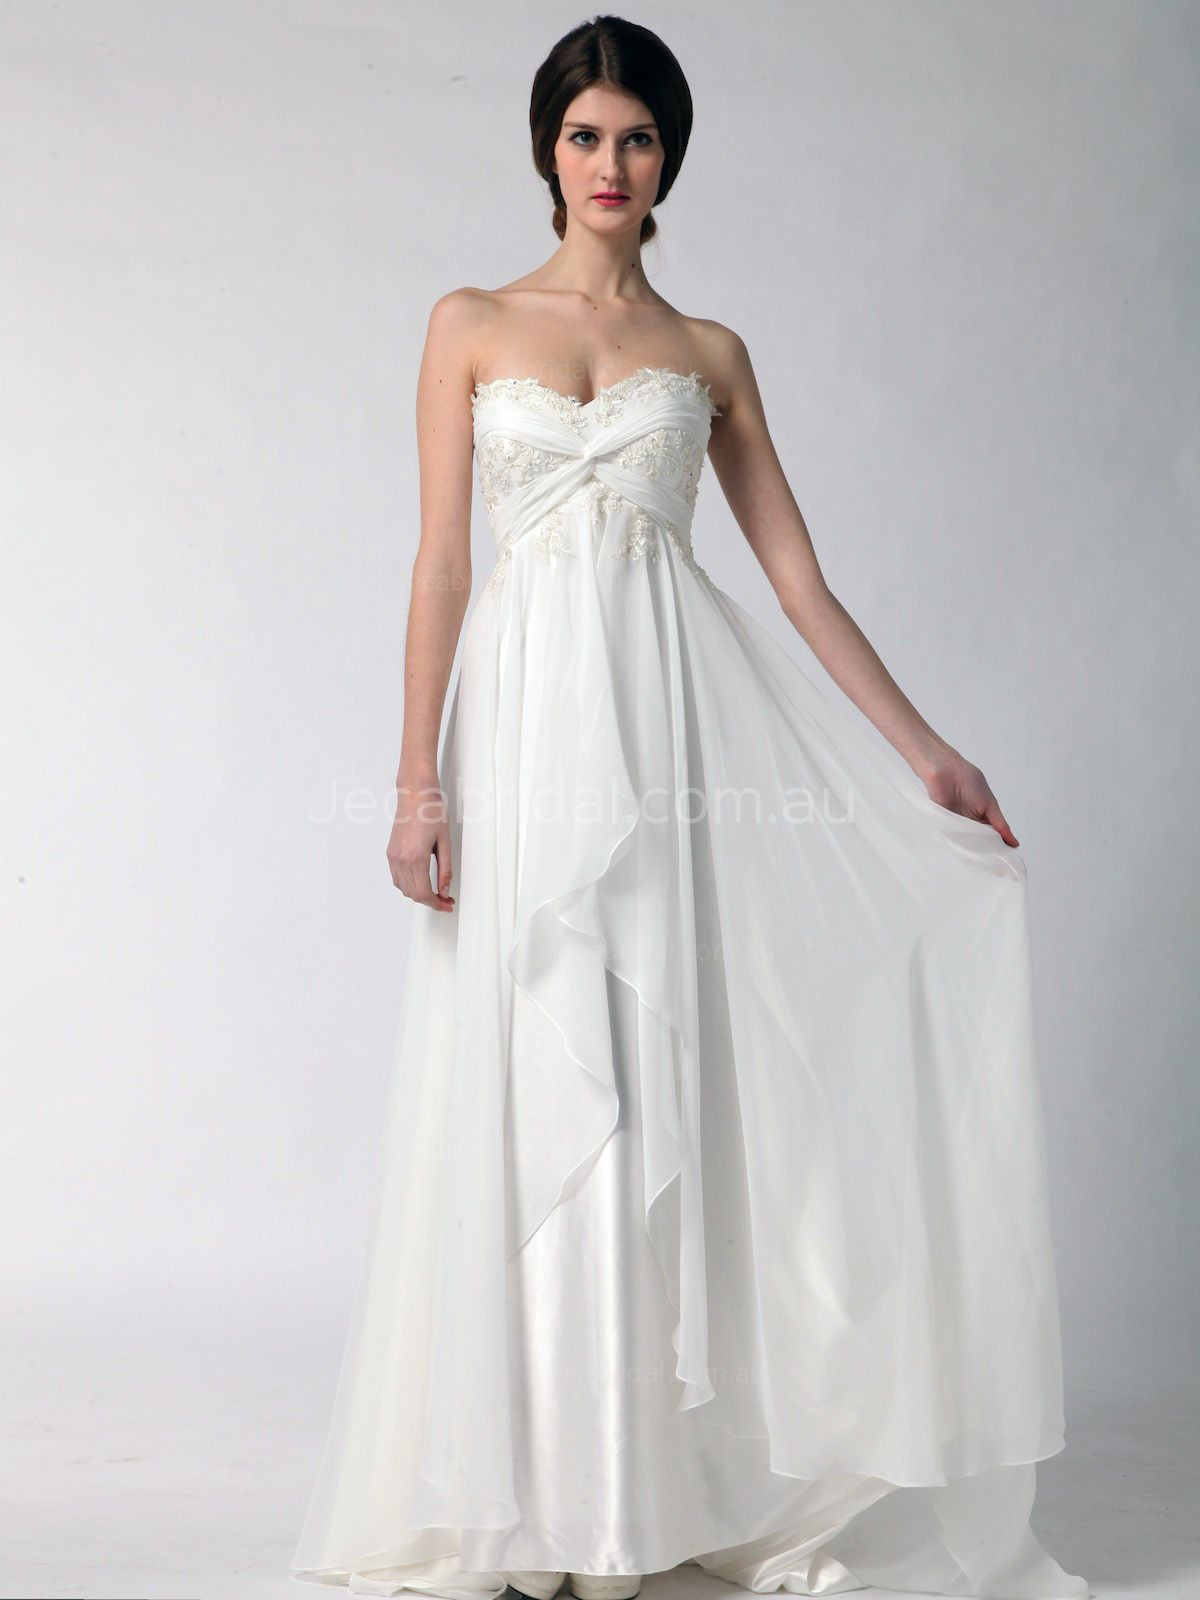 20 Of the Best Ideas for Greek Goddess Wedding Dress - Home, Family ...